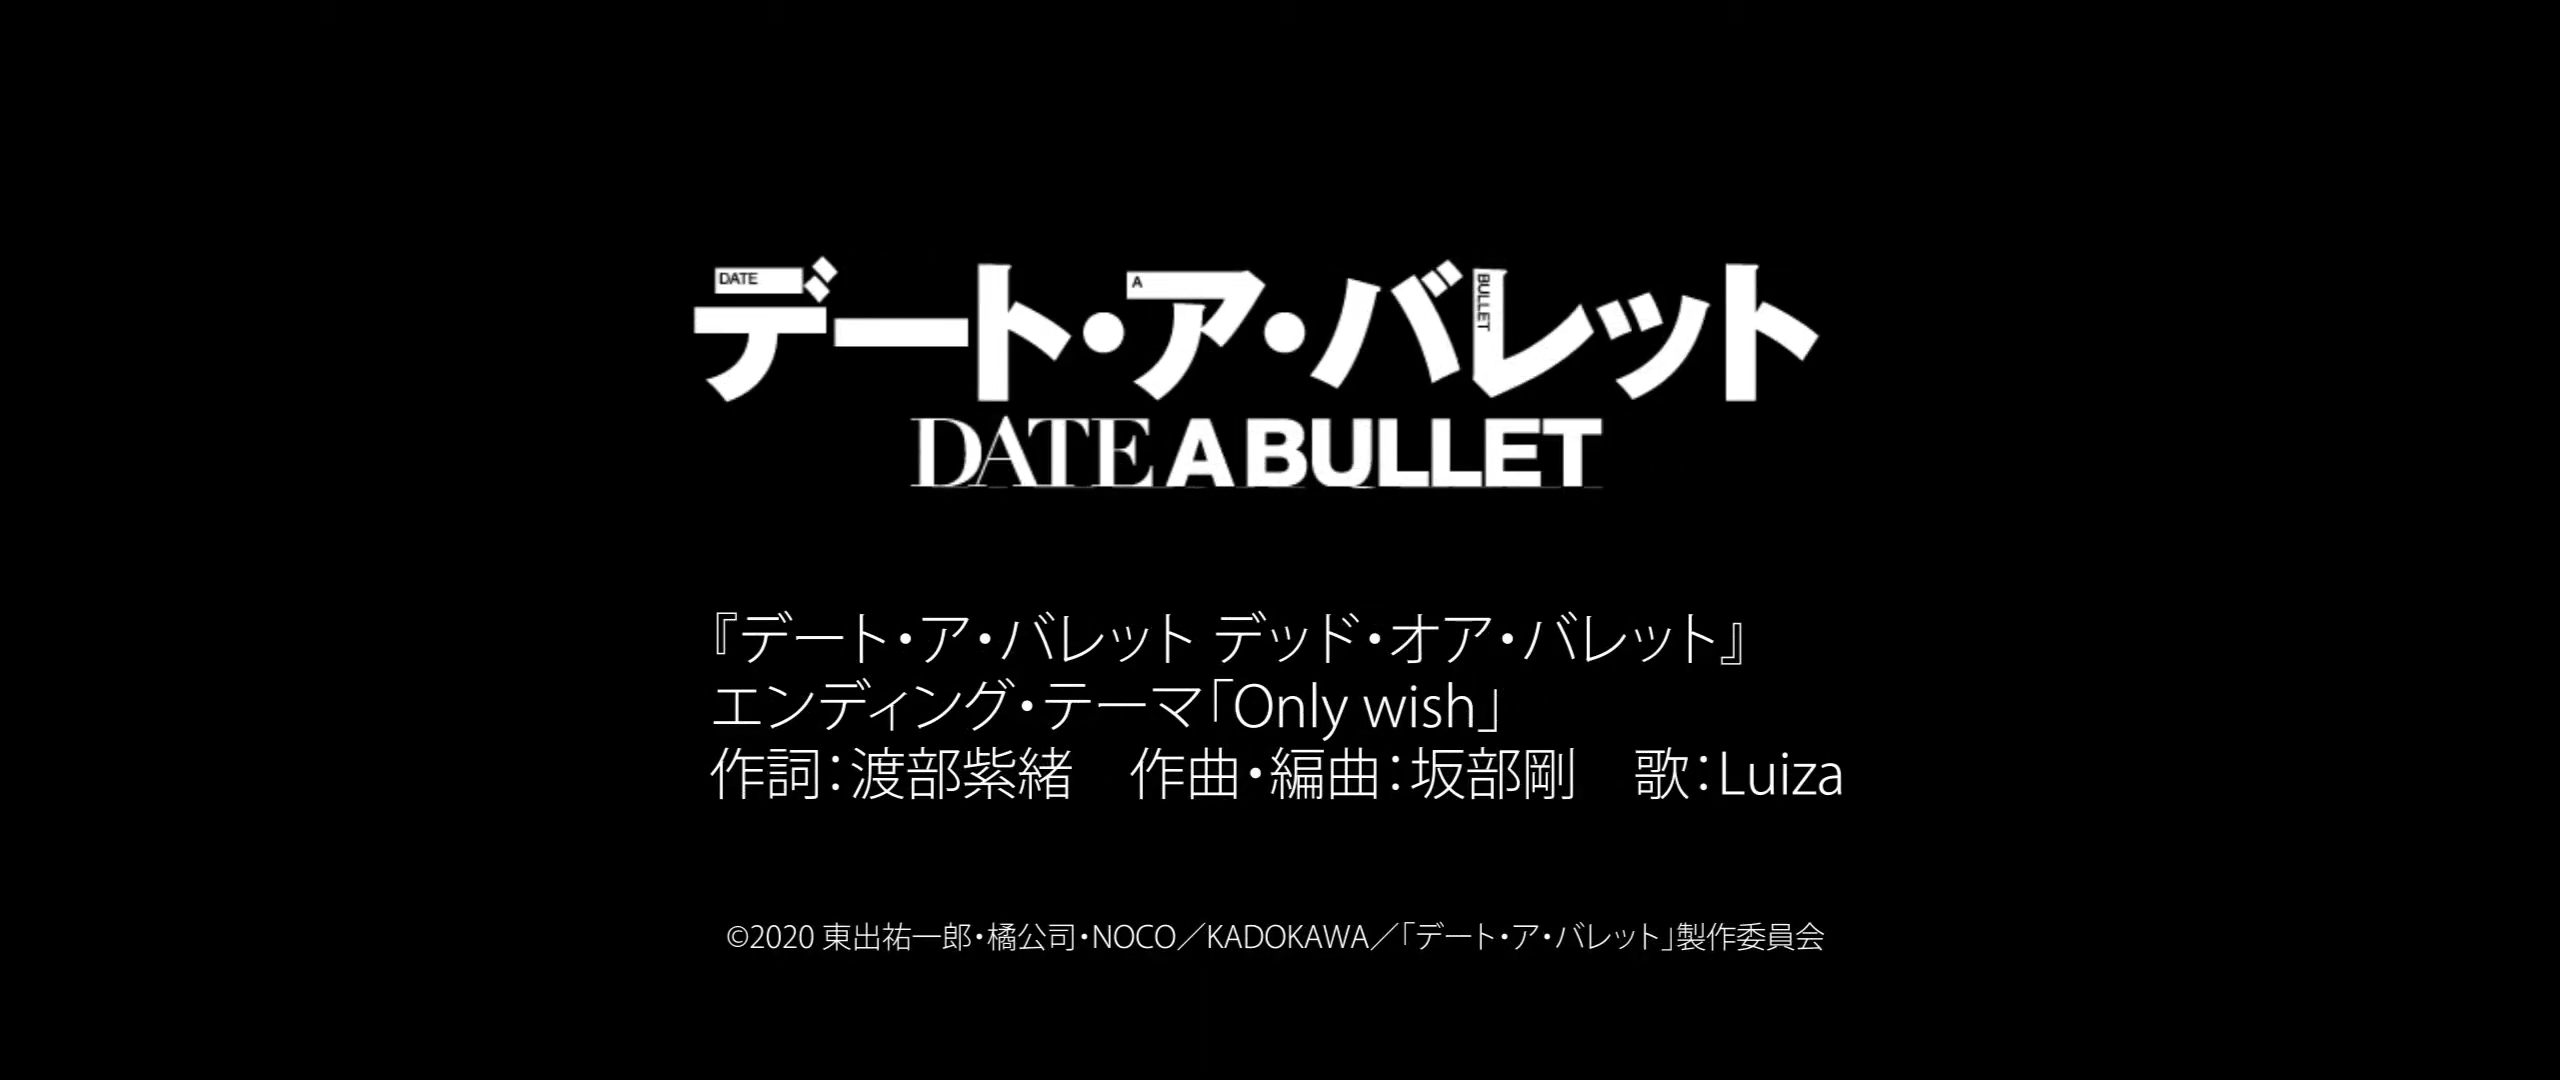 Date A Bullet: Dead or Bullet Ending Theme Released - Anime Corner